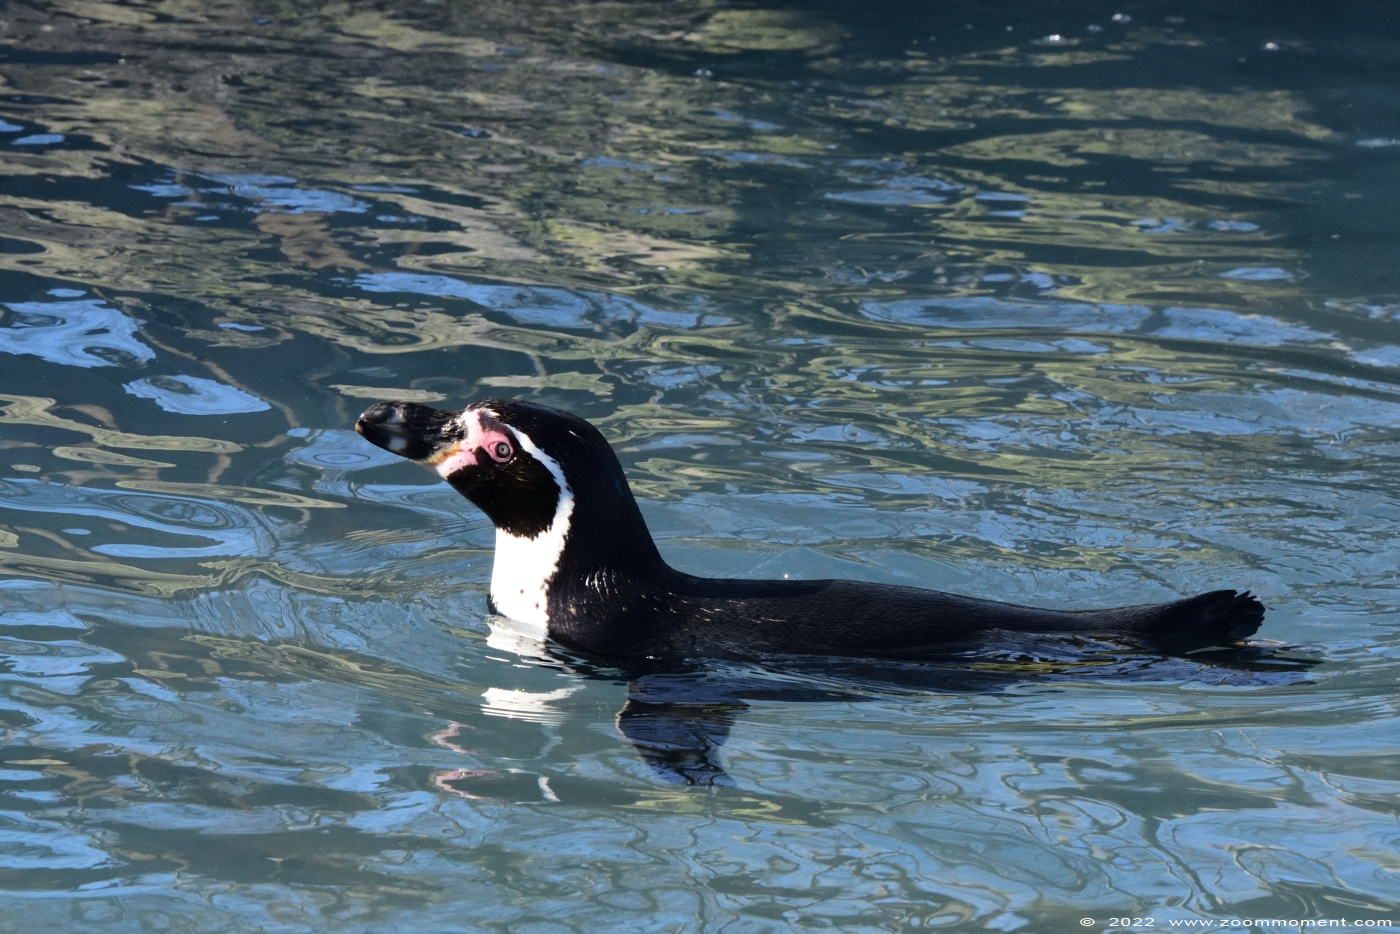 humboldtpinguin ( Spheniscus humboldti ) humboldt penguin Humboldt Pinguin
Trefwoorden: Monde Sauvage Belgium humboldtpinguin Spheniscus humboldti humboldt penguin Humboldt Pinguin